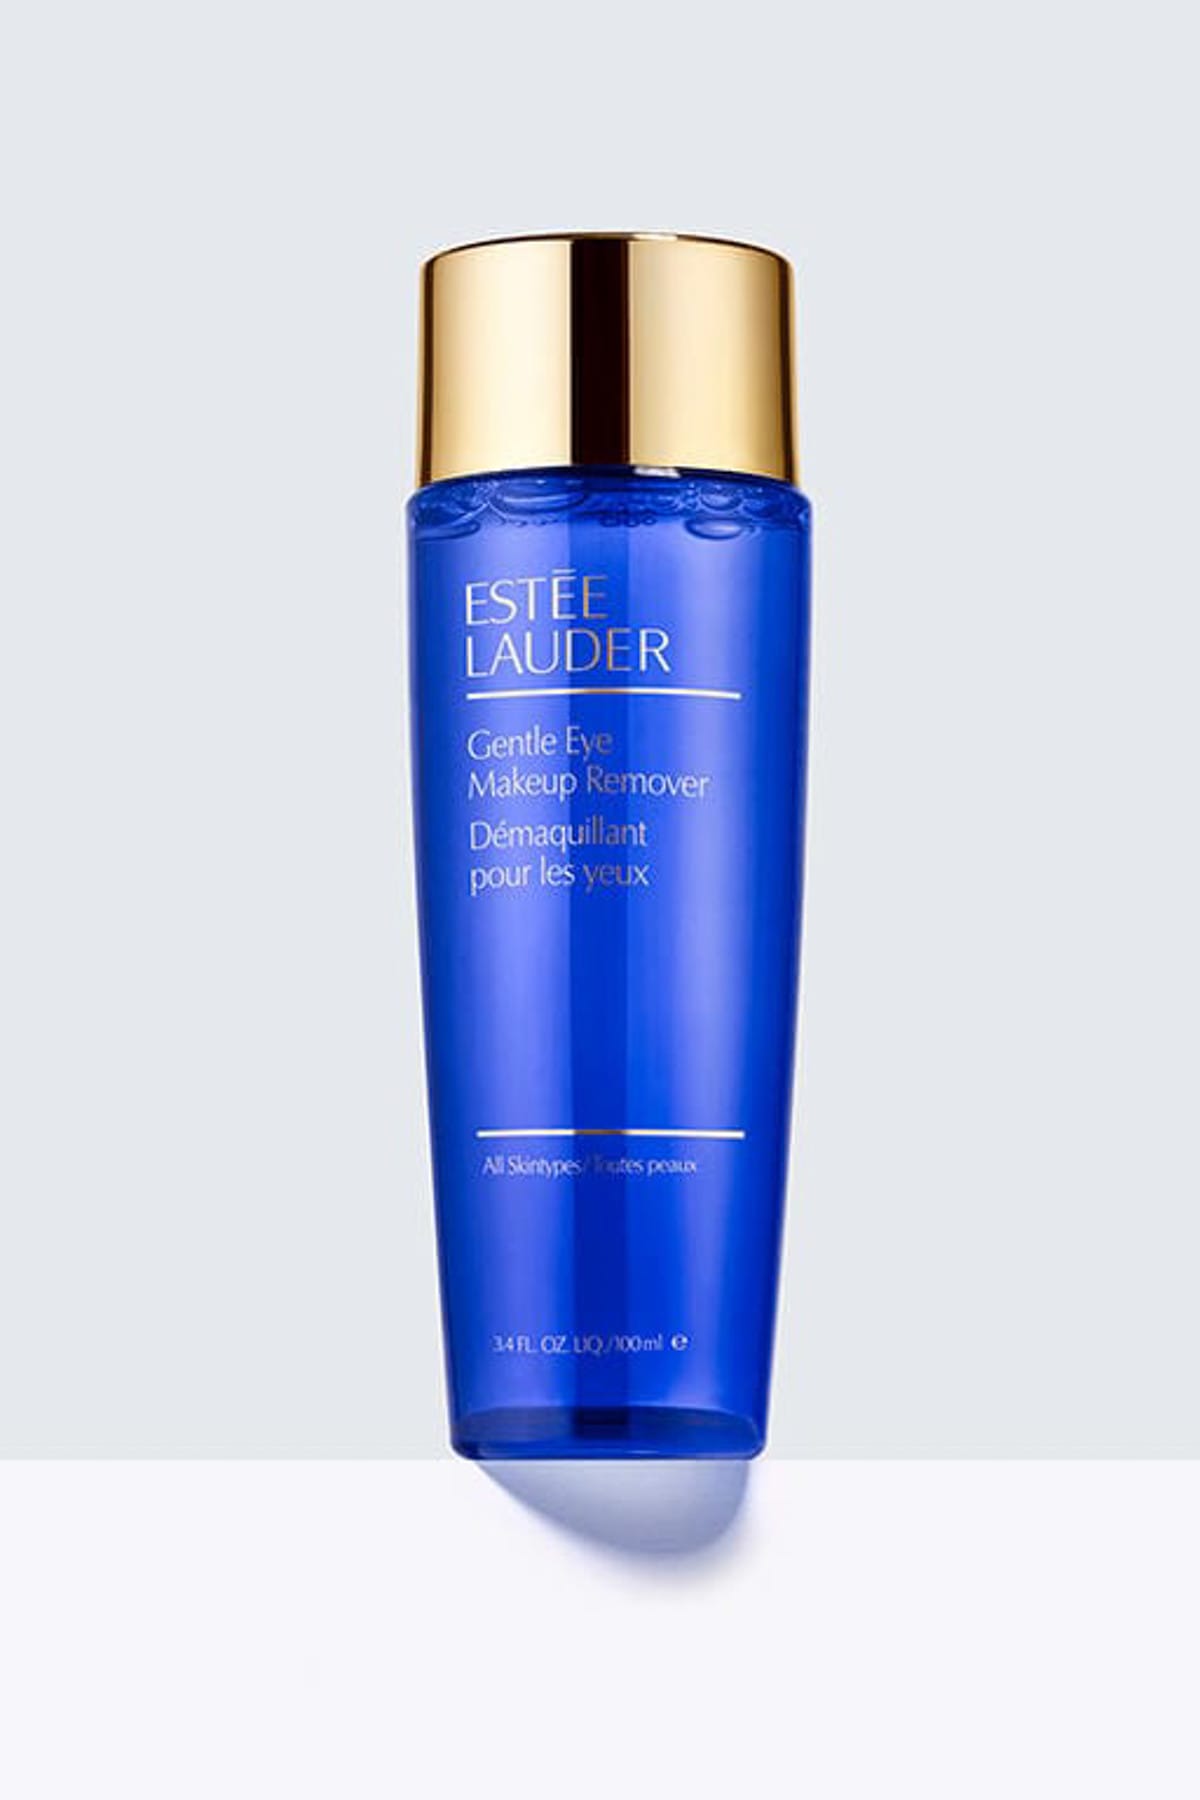 Estee Lauder Göz Makyajı Temizleme Losyonu - Gentle Eye Makeup Remover Lotion 100 ml 027131009306